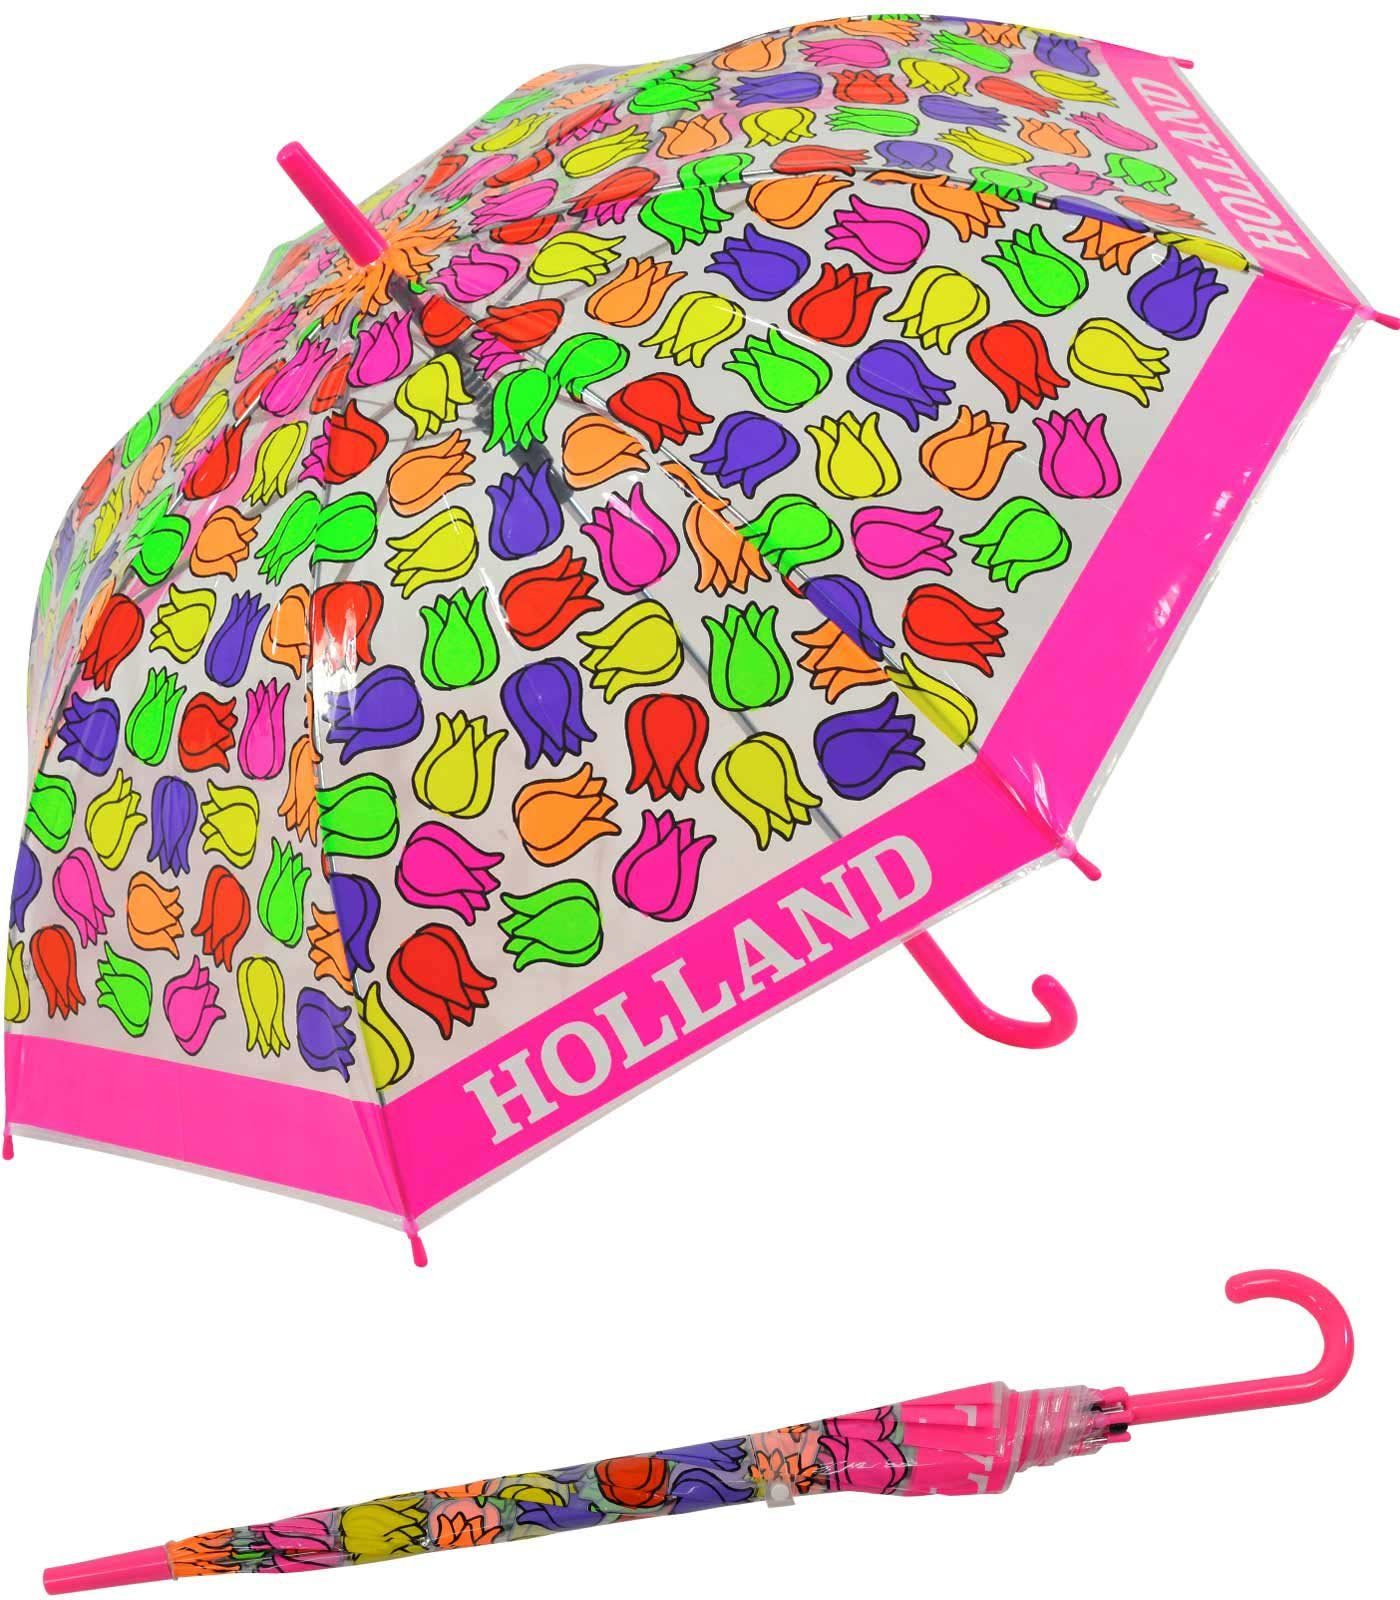 Impliva Langregenschirm Falconetti Kinderschirm bunt transparent - Tulpen, durchsichtig pink